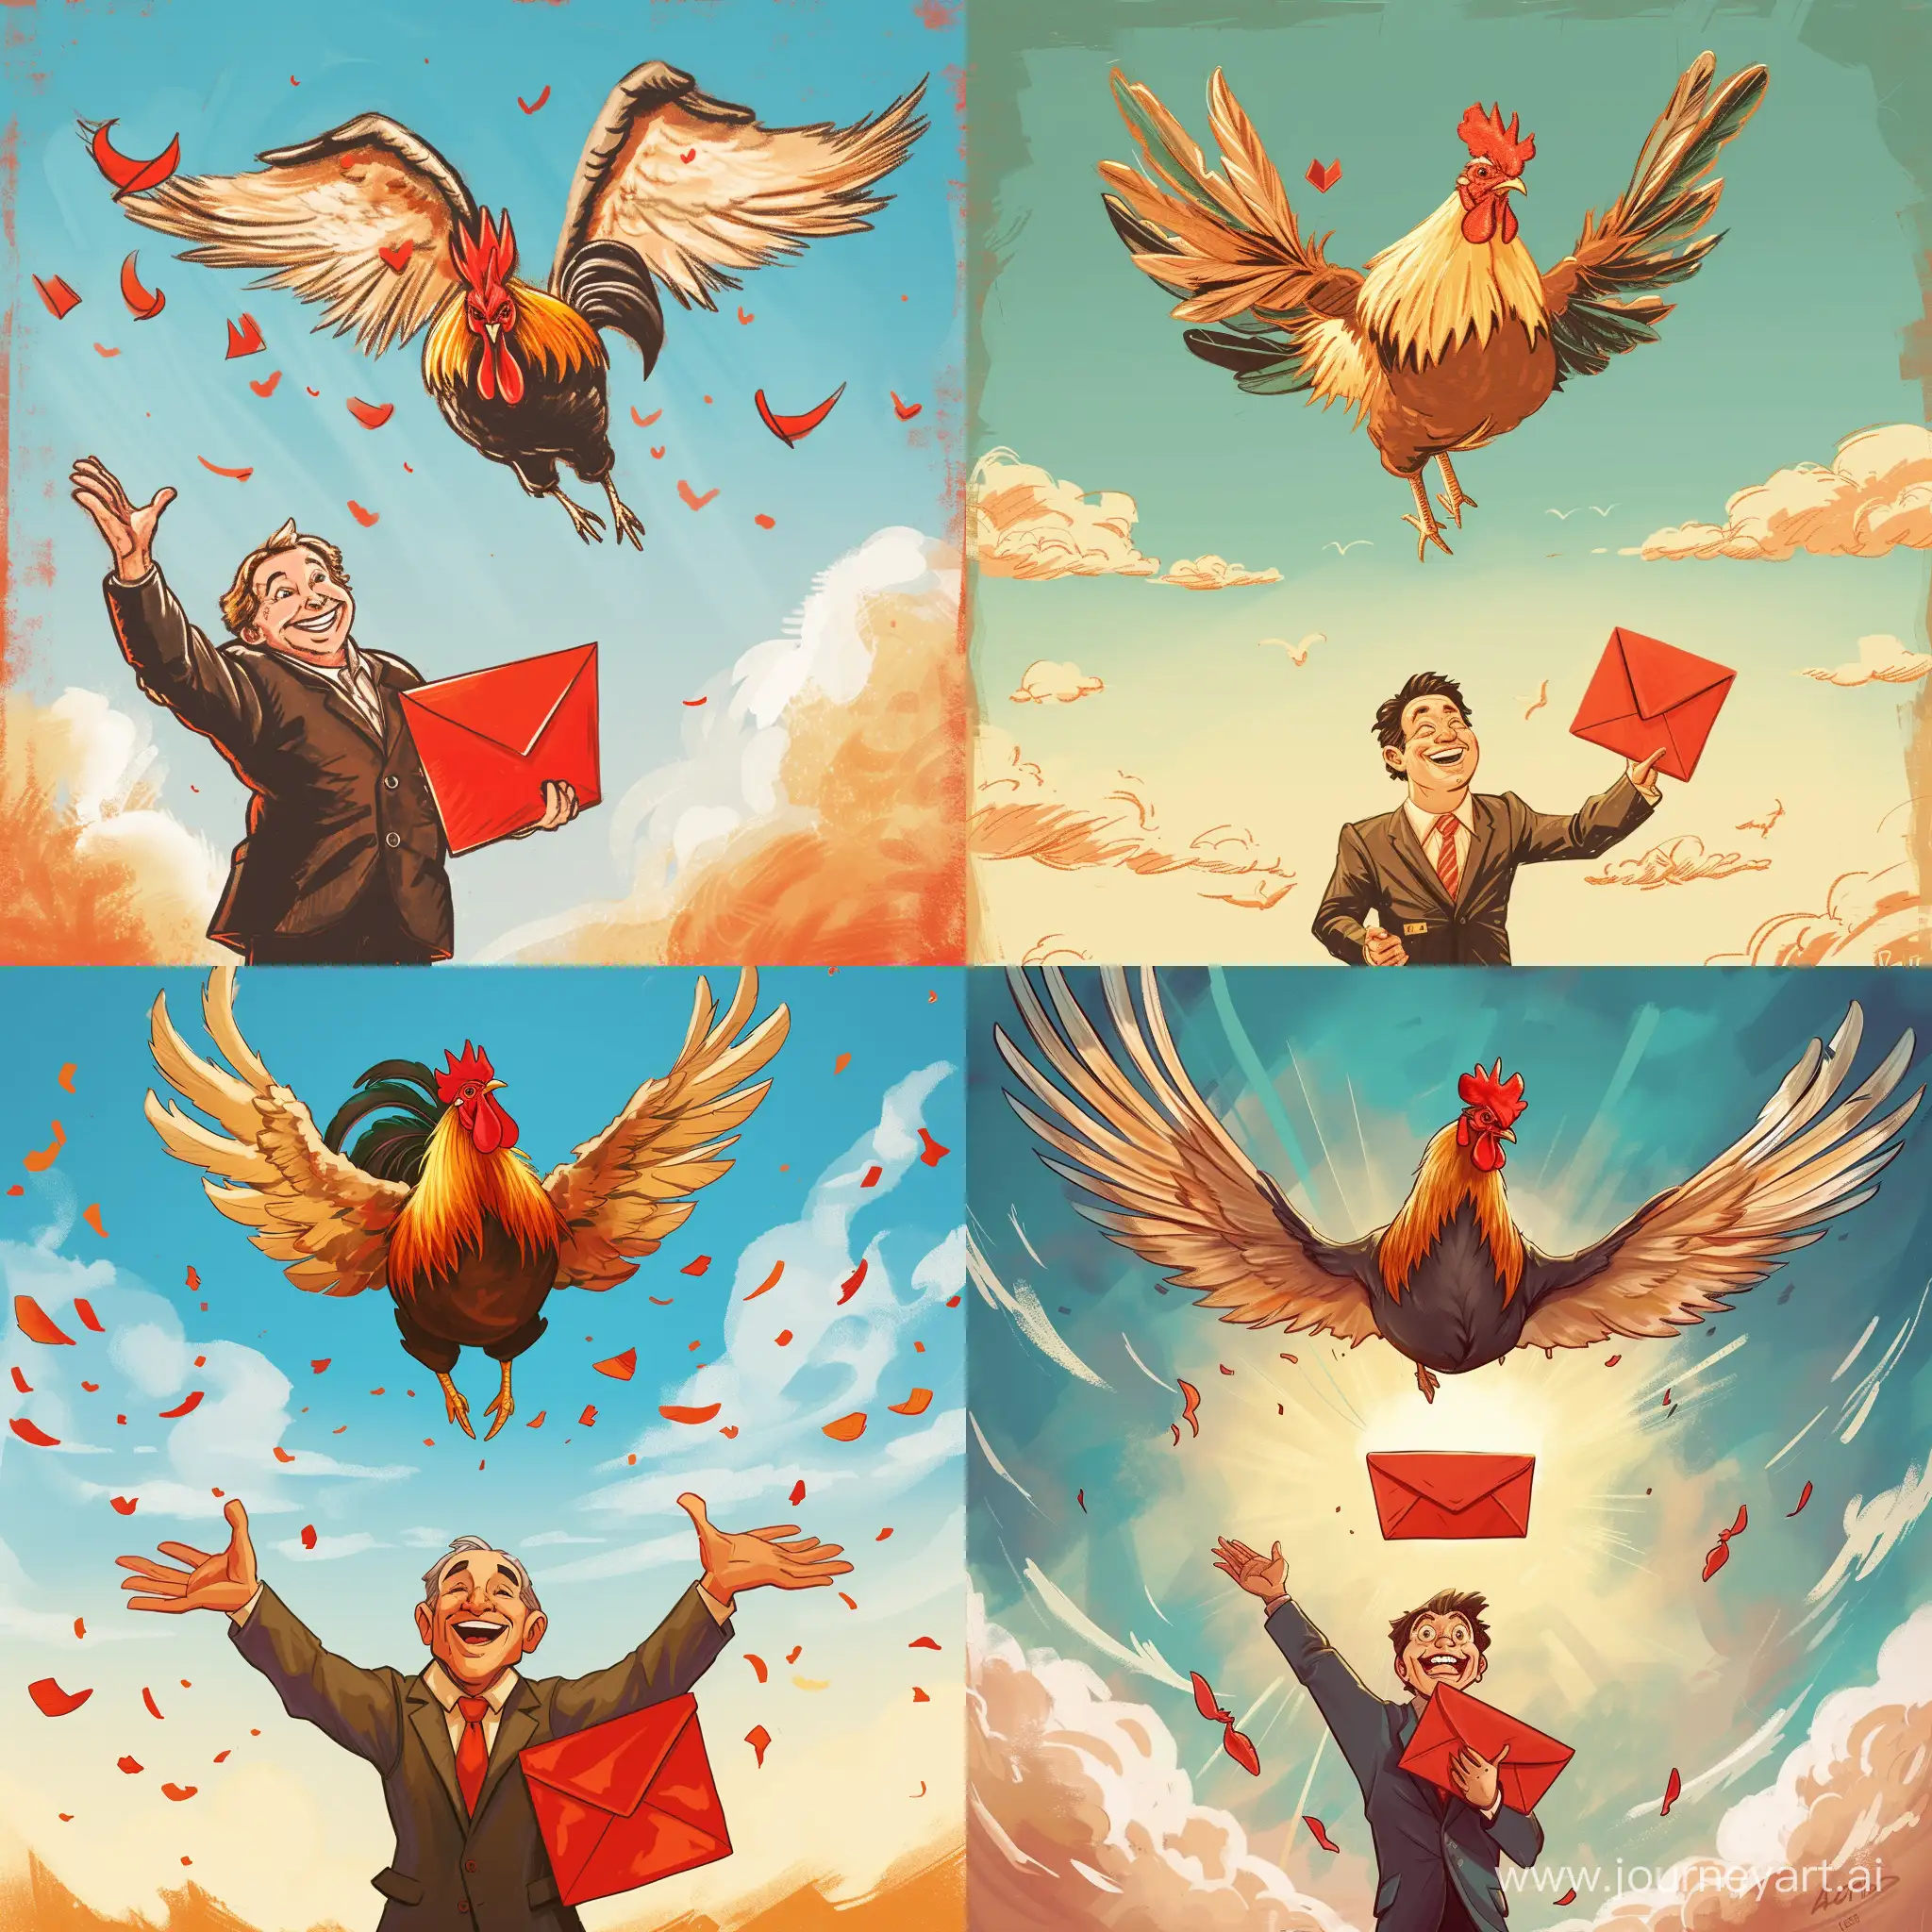 帮我画一只公鸡，展翅飞向天空，下面站着一个穿着西装的男子，面带微笑，双手拿着红包。色彩饱满，卡通风格。
